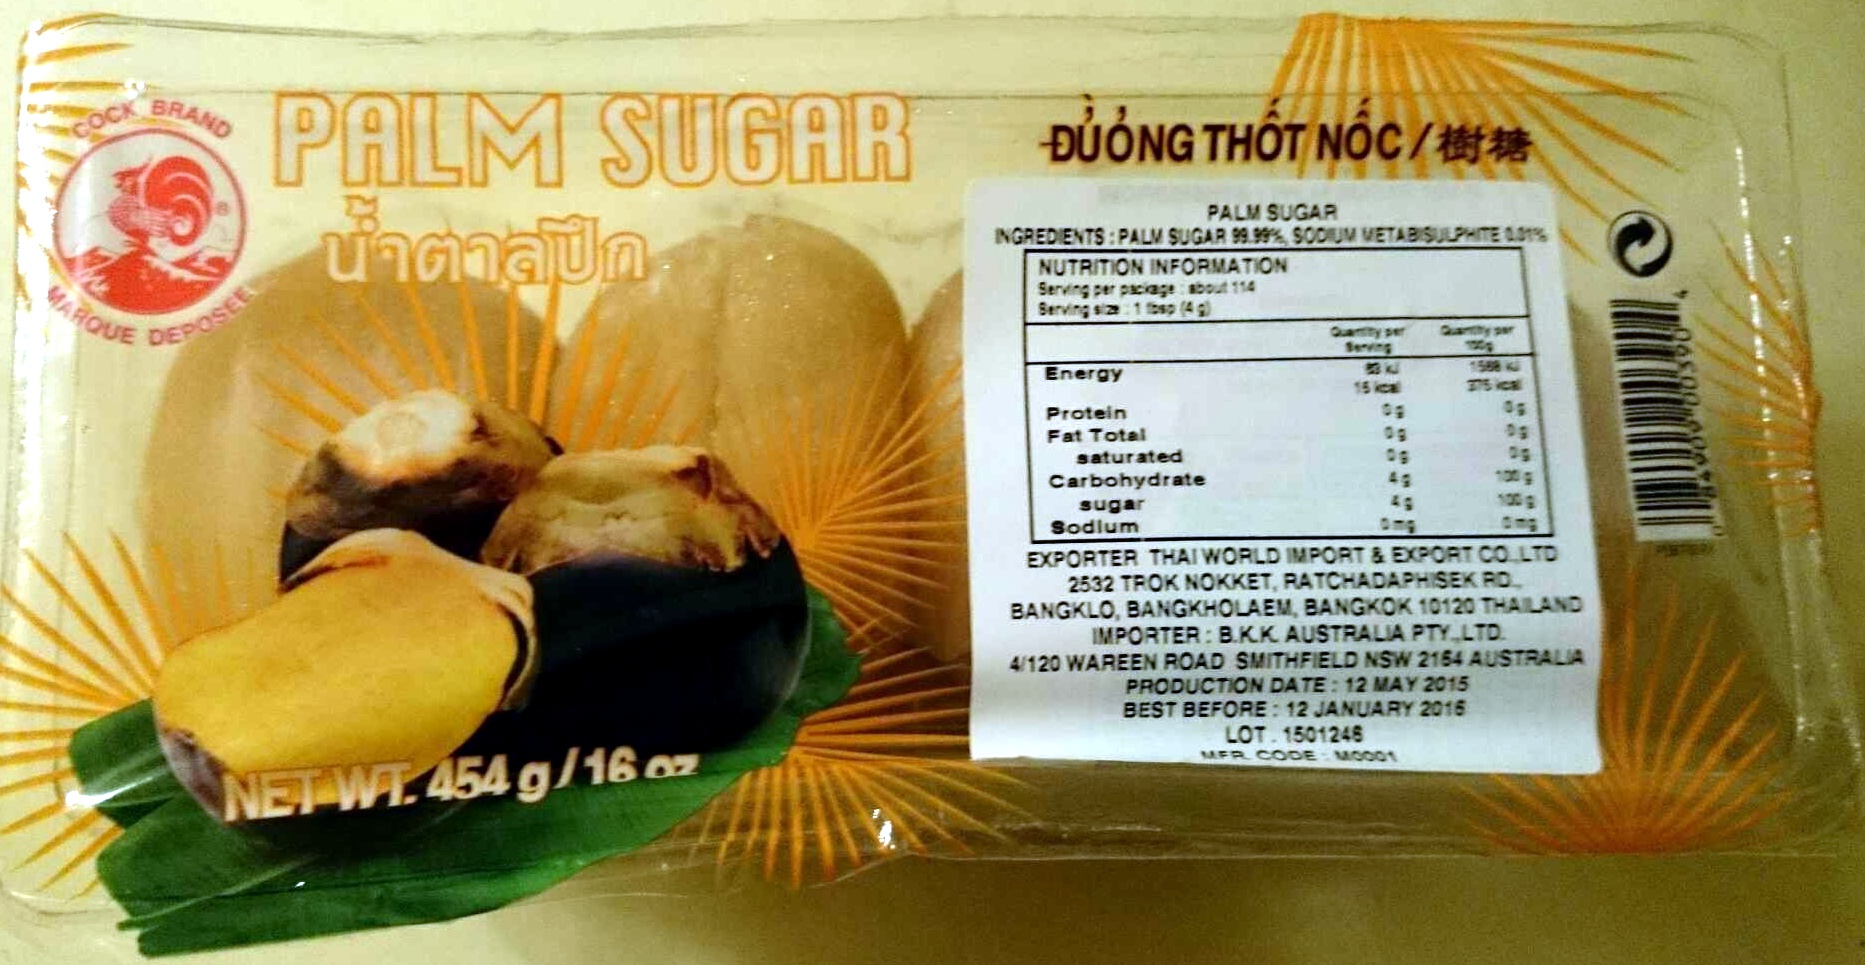 Cock brand, palm sugar - Producto - en